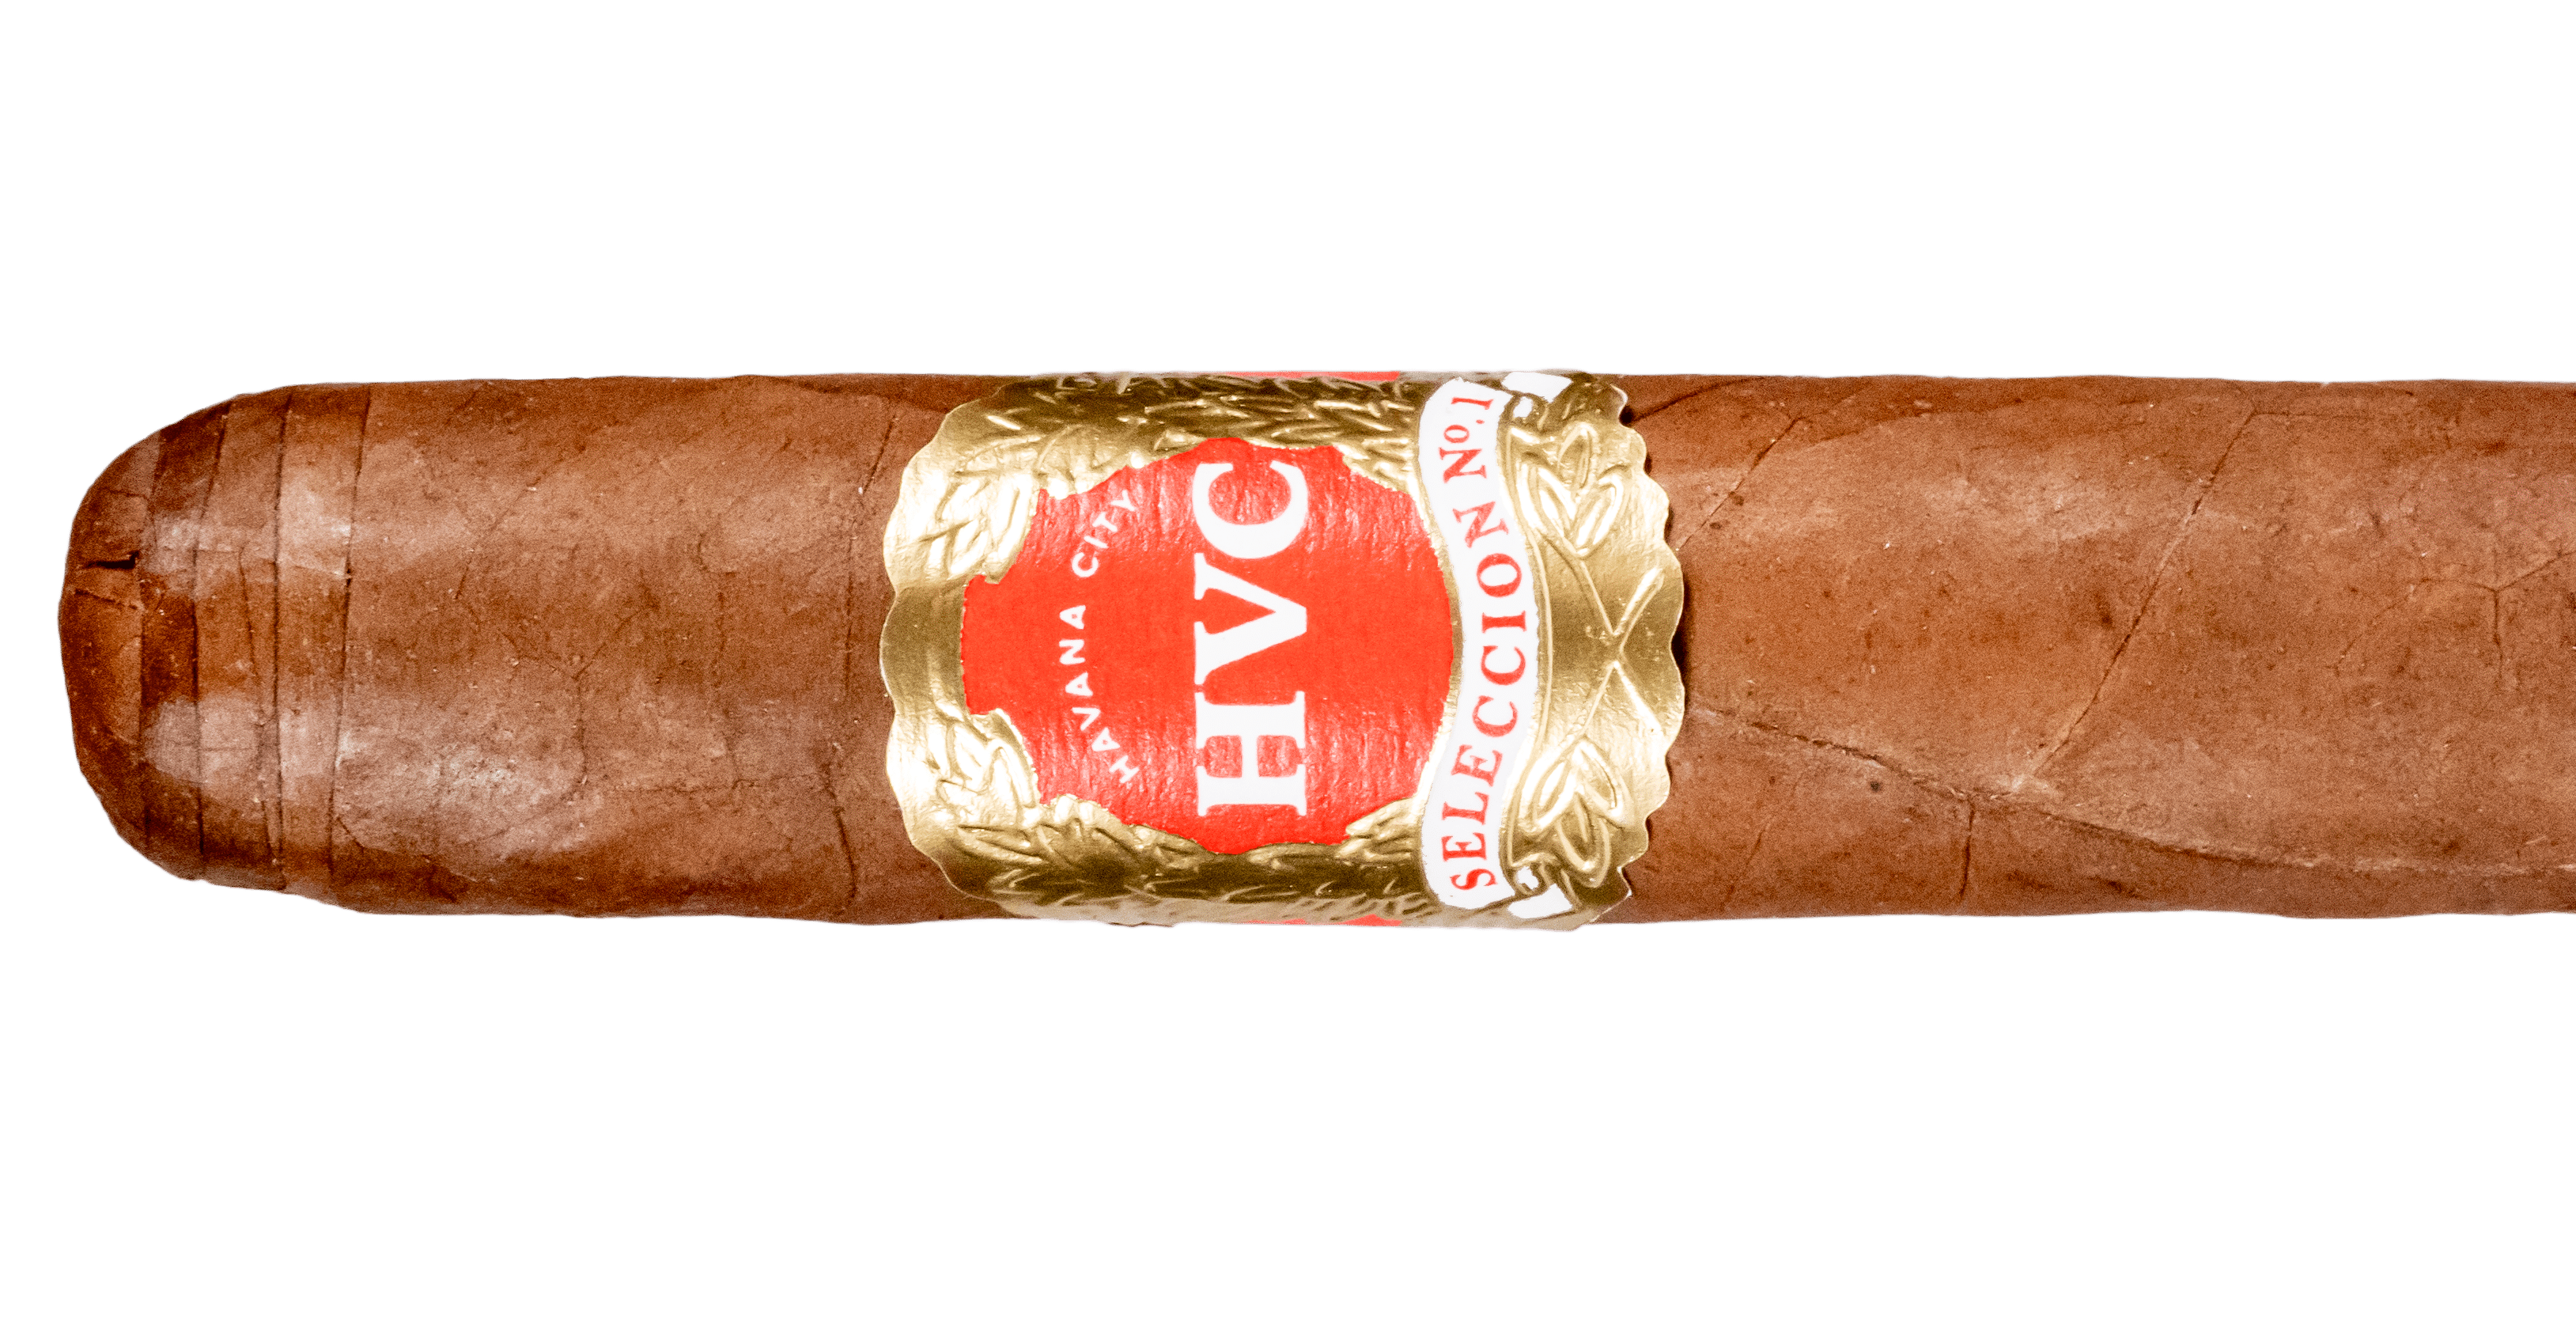 HVC Selección No. 1 Natural Esenciales - Blind Cigar Review